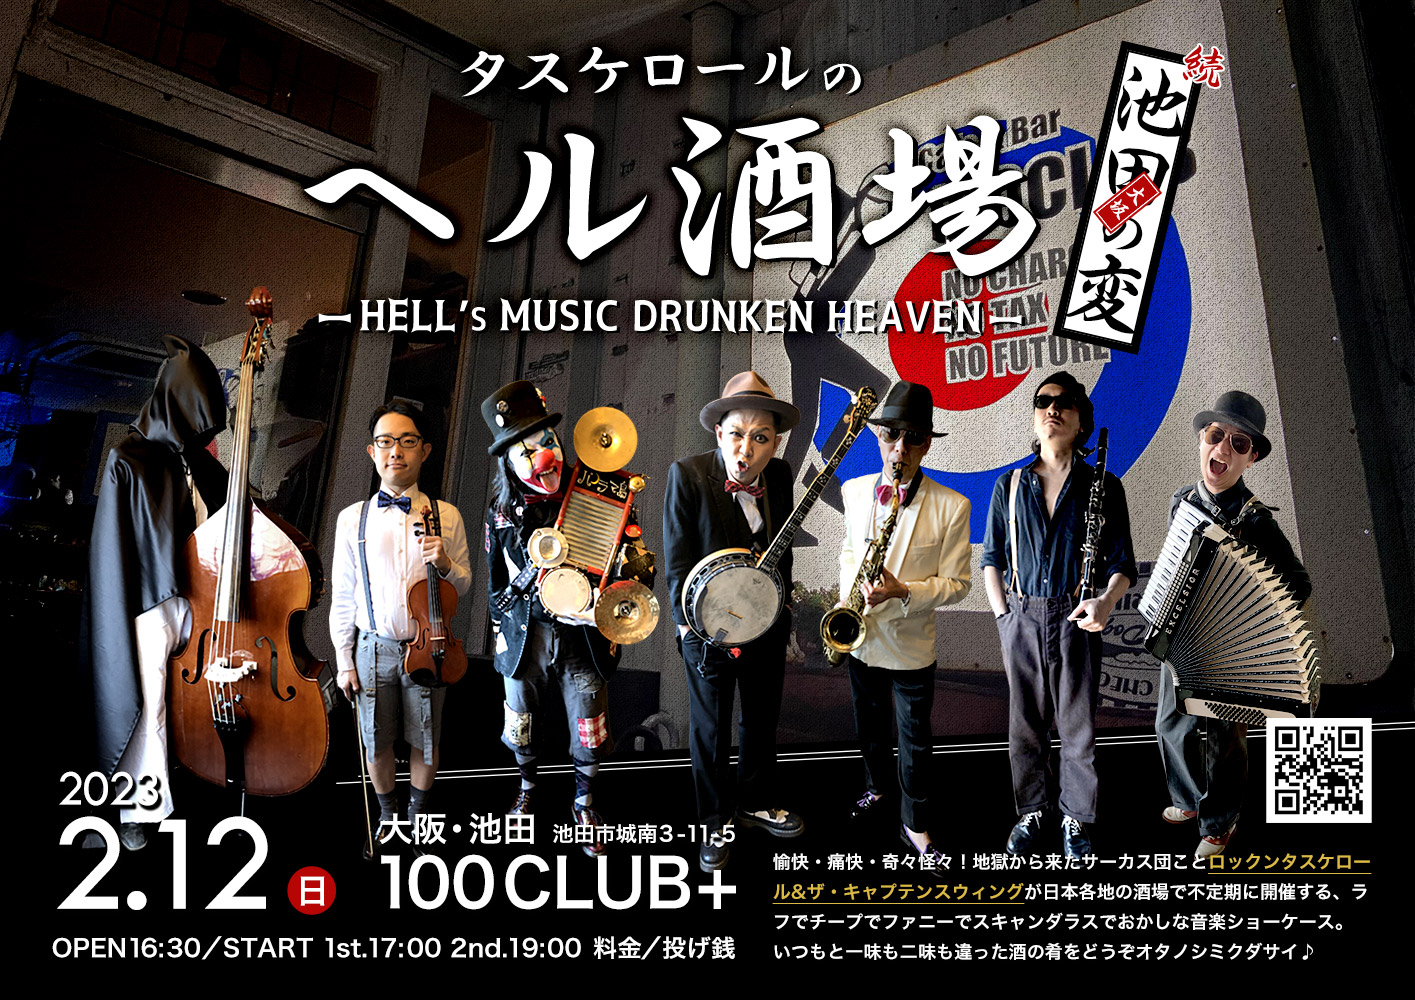 大阪・池田 100club+「第九回 タスケロールのヘル酒場 続・大阪池田の変」